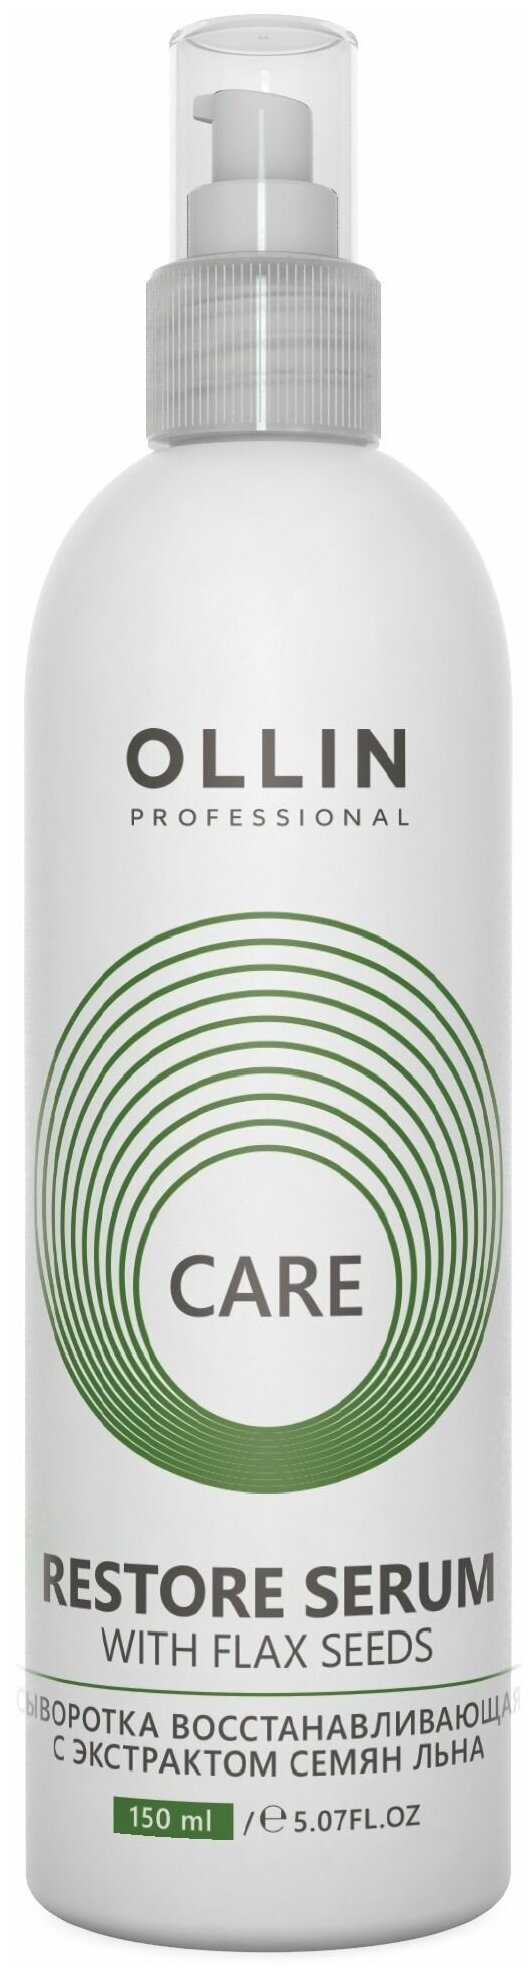 OLLIN Professional Care Сыворотка восстанавливающая с экстрактом семян льна